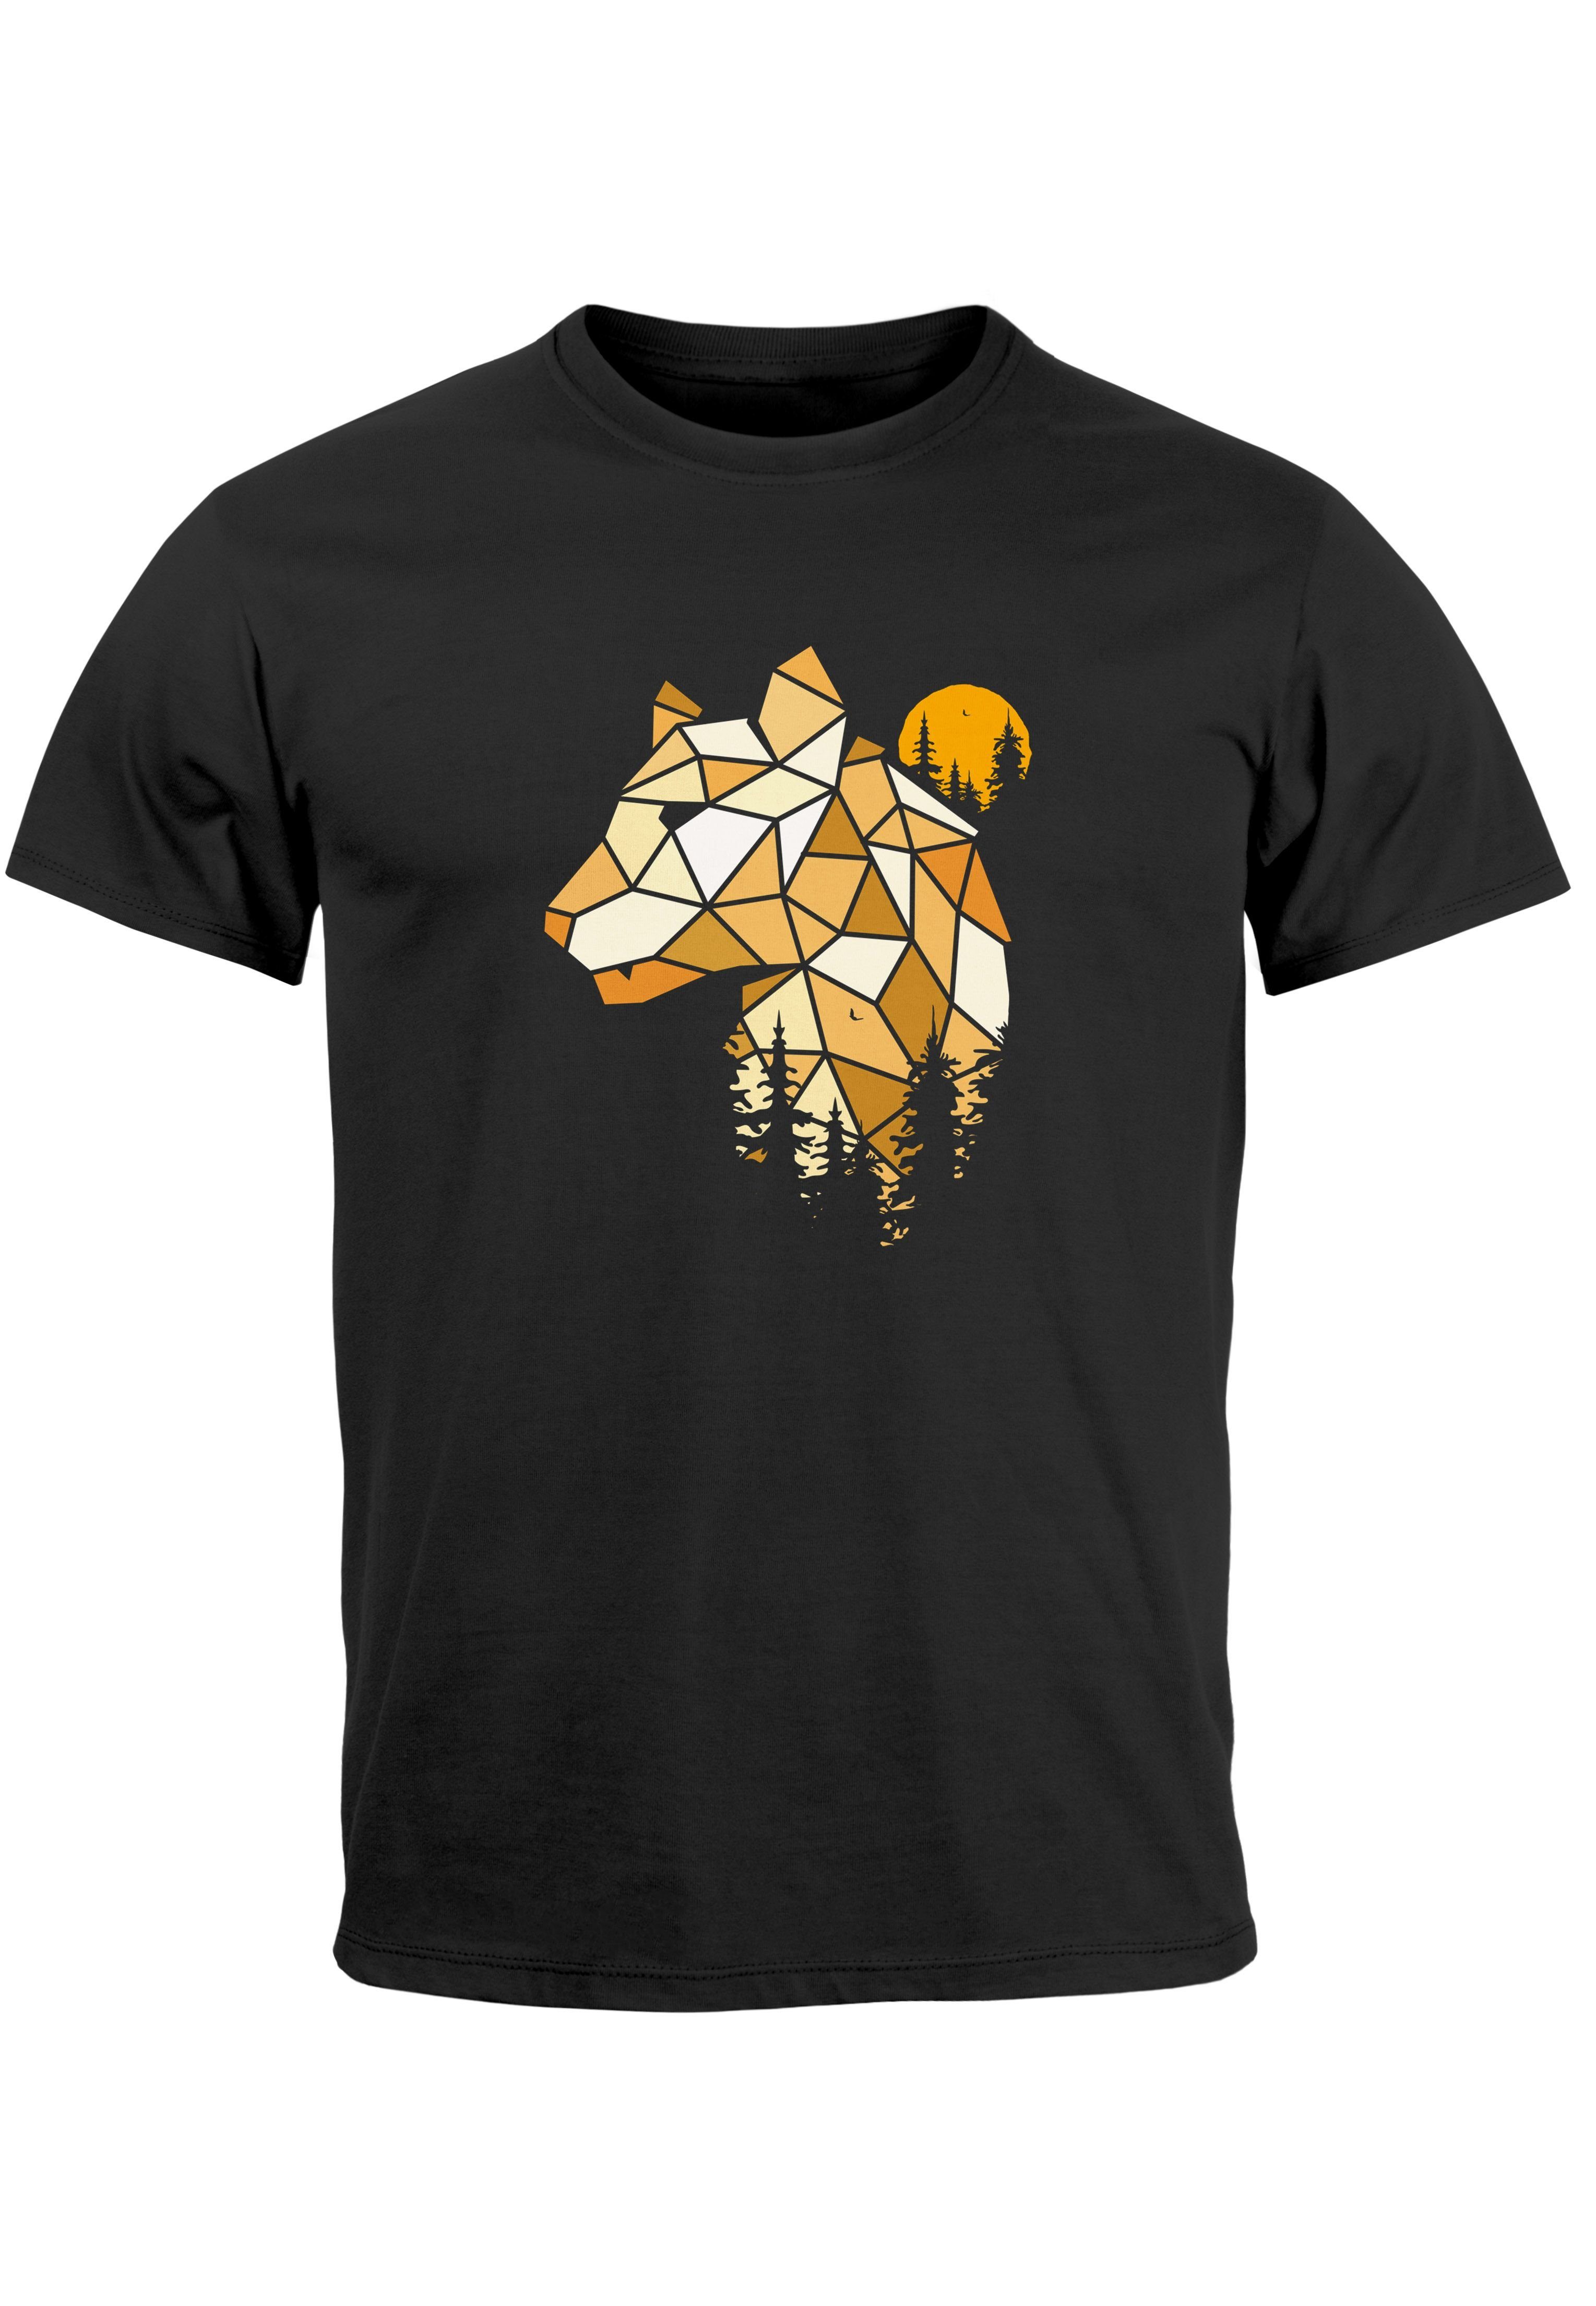 Neverless Print-Shirt Herren T-Shirt schwarz Outdoor Fashion Motiv Wald Tiere Print Luchs Au Polygon mit Print